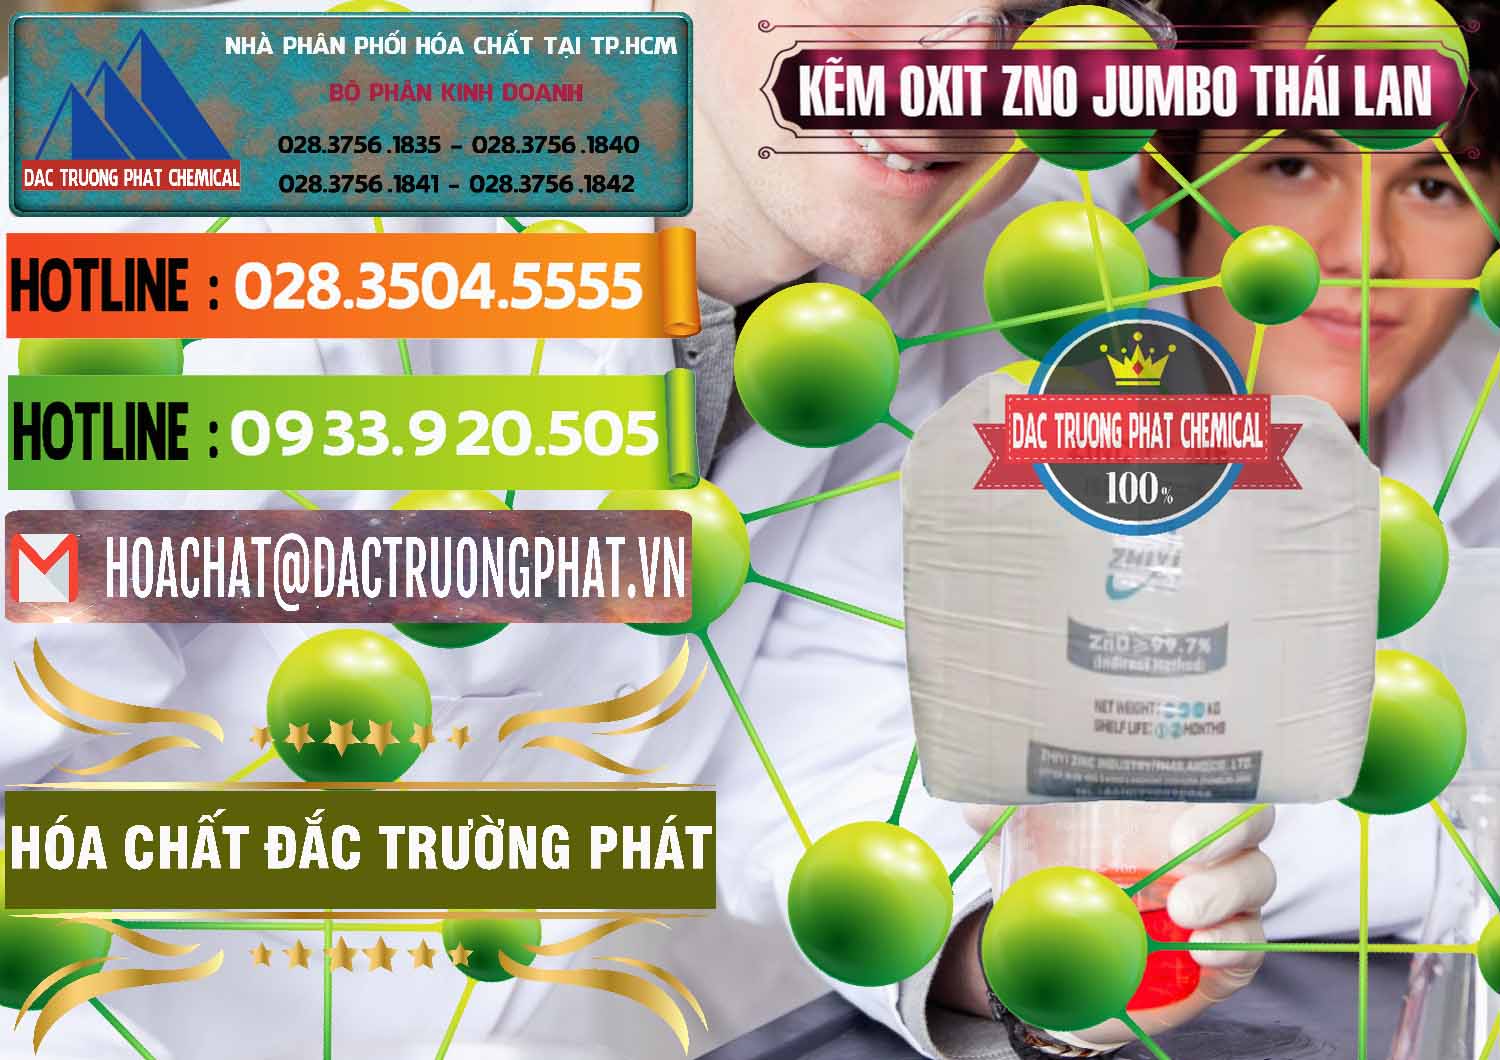 Cty bán & cung ứng Zinc Oxide - Bột Kẽm Oxit ZNO Jumbo Bành Thái Lan Thailand - 0370 - Cung cấp - phân phối hóa chất tại TP.HCM - cungcaphoachat.com.vn